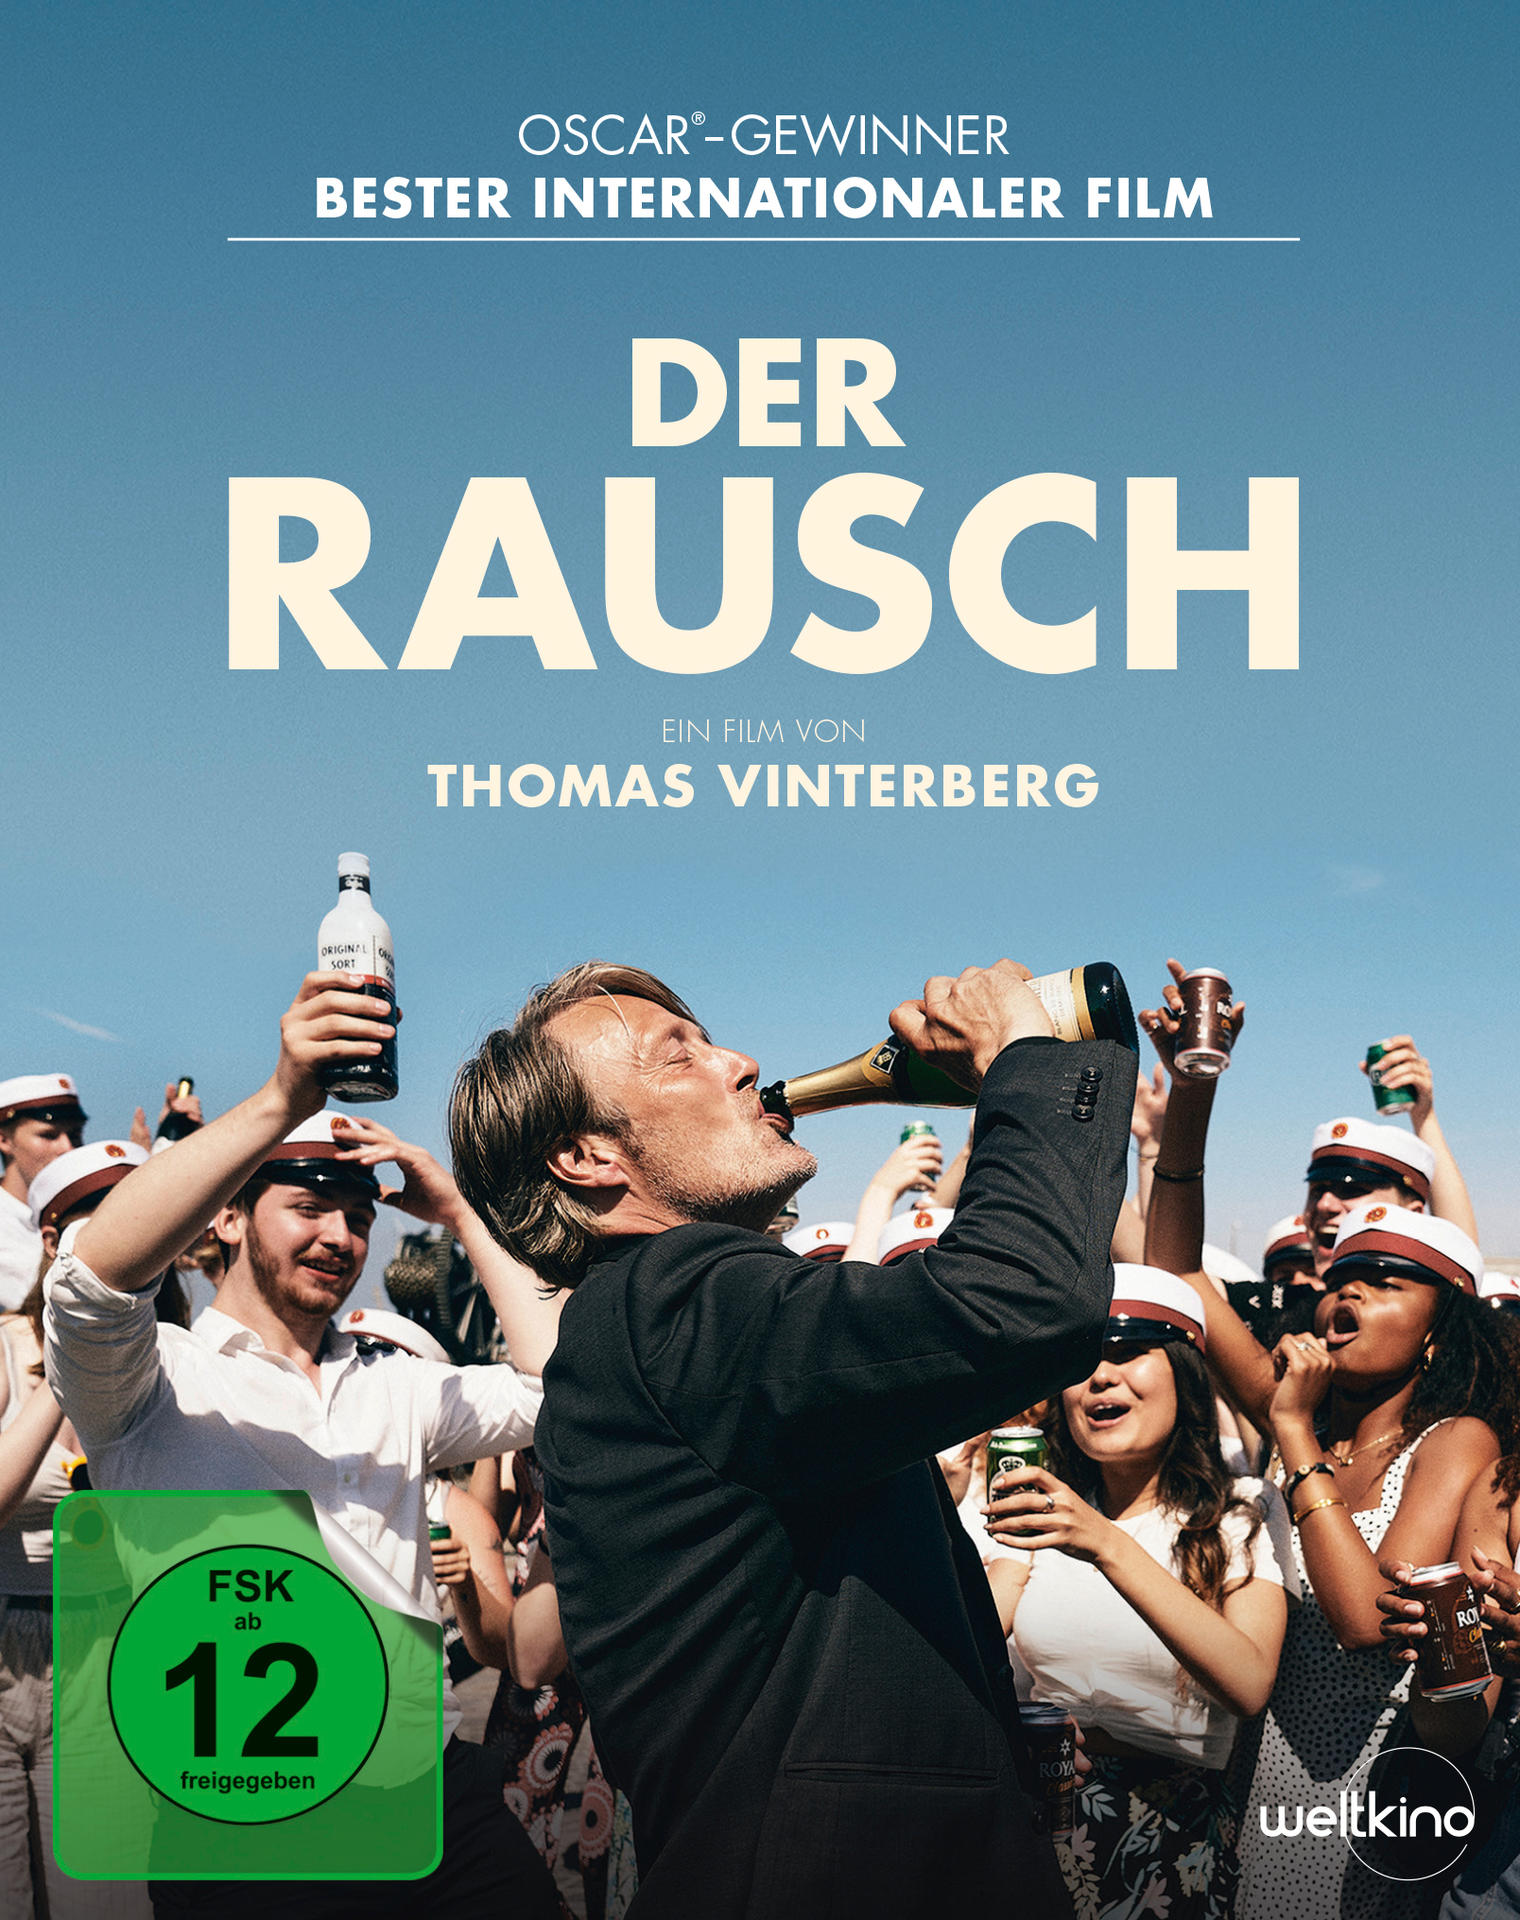 Blu-ray Rausch + Der DVD